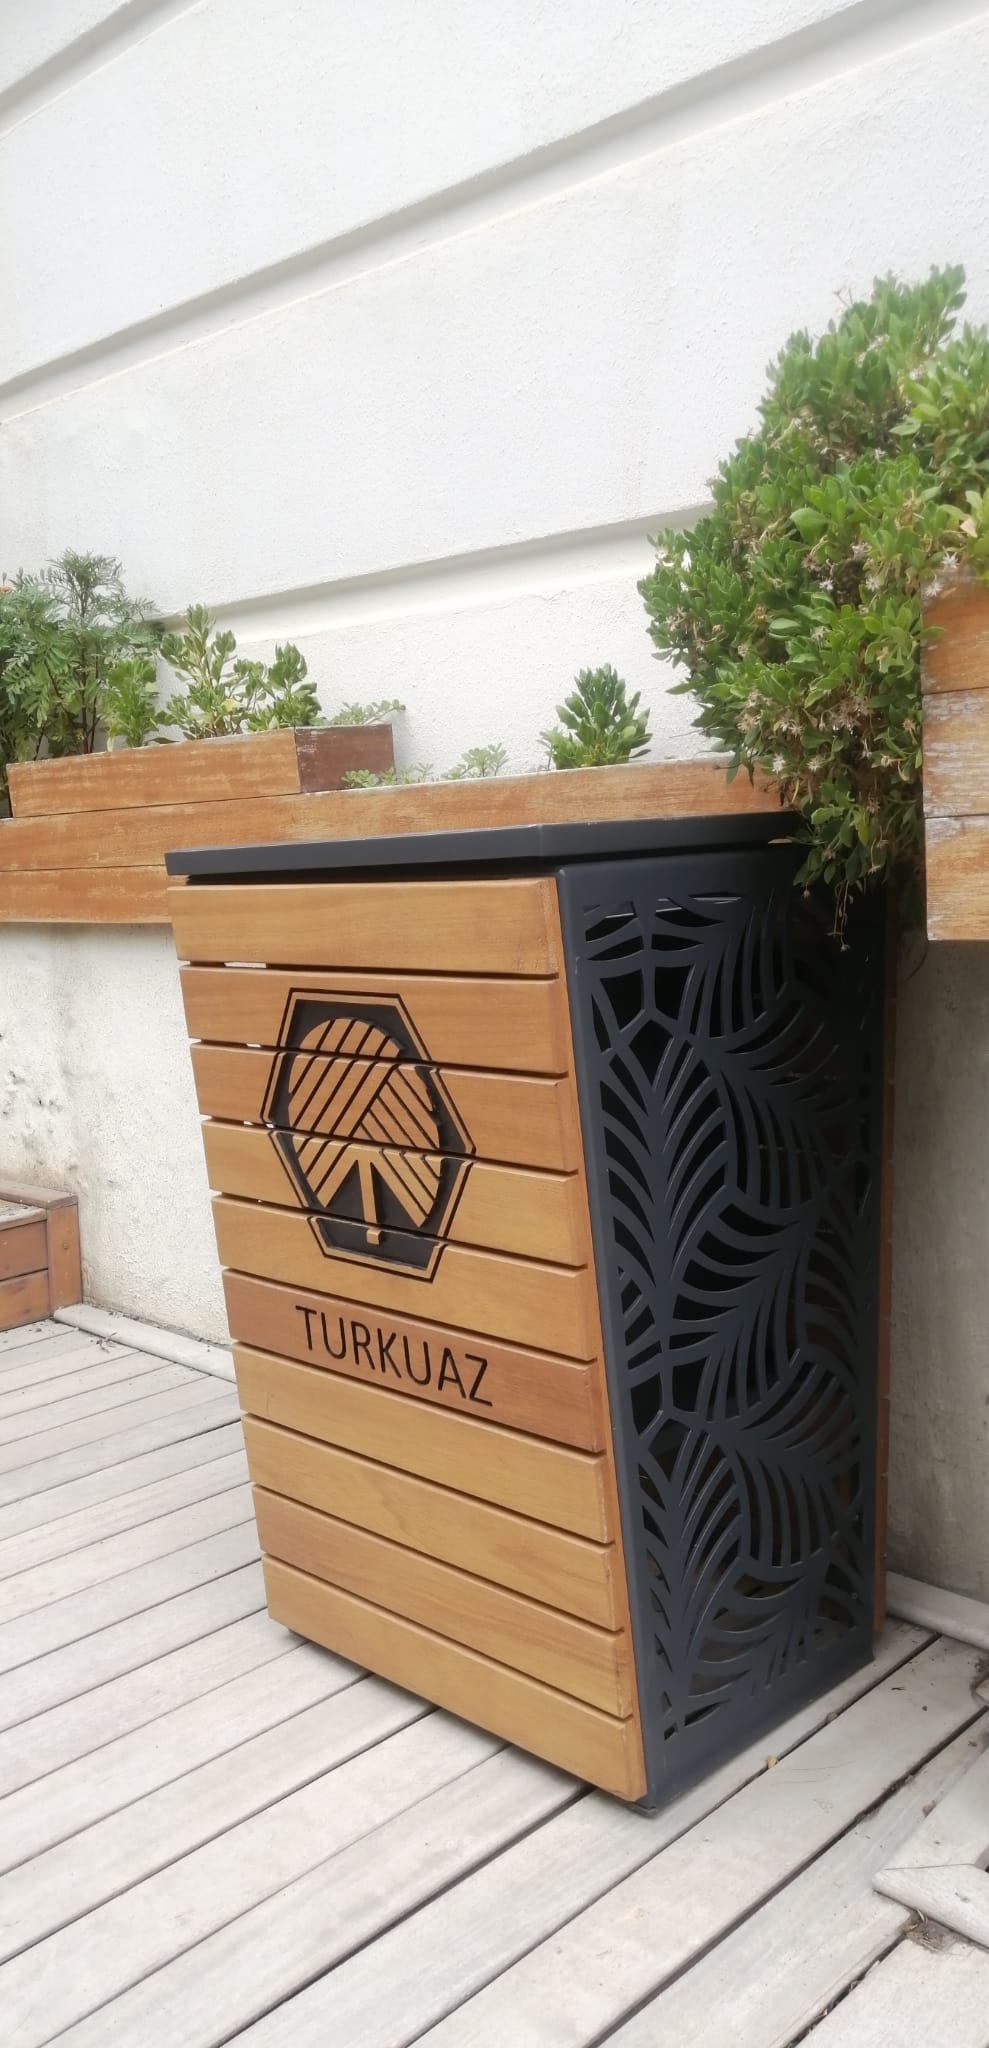 Turkuaz Park | Wooden Litter Bins